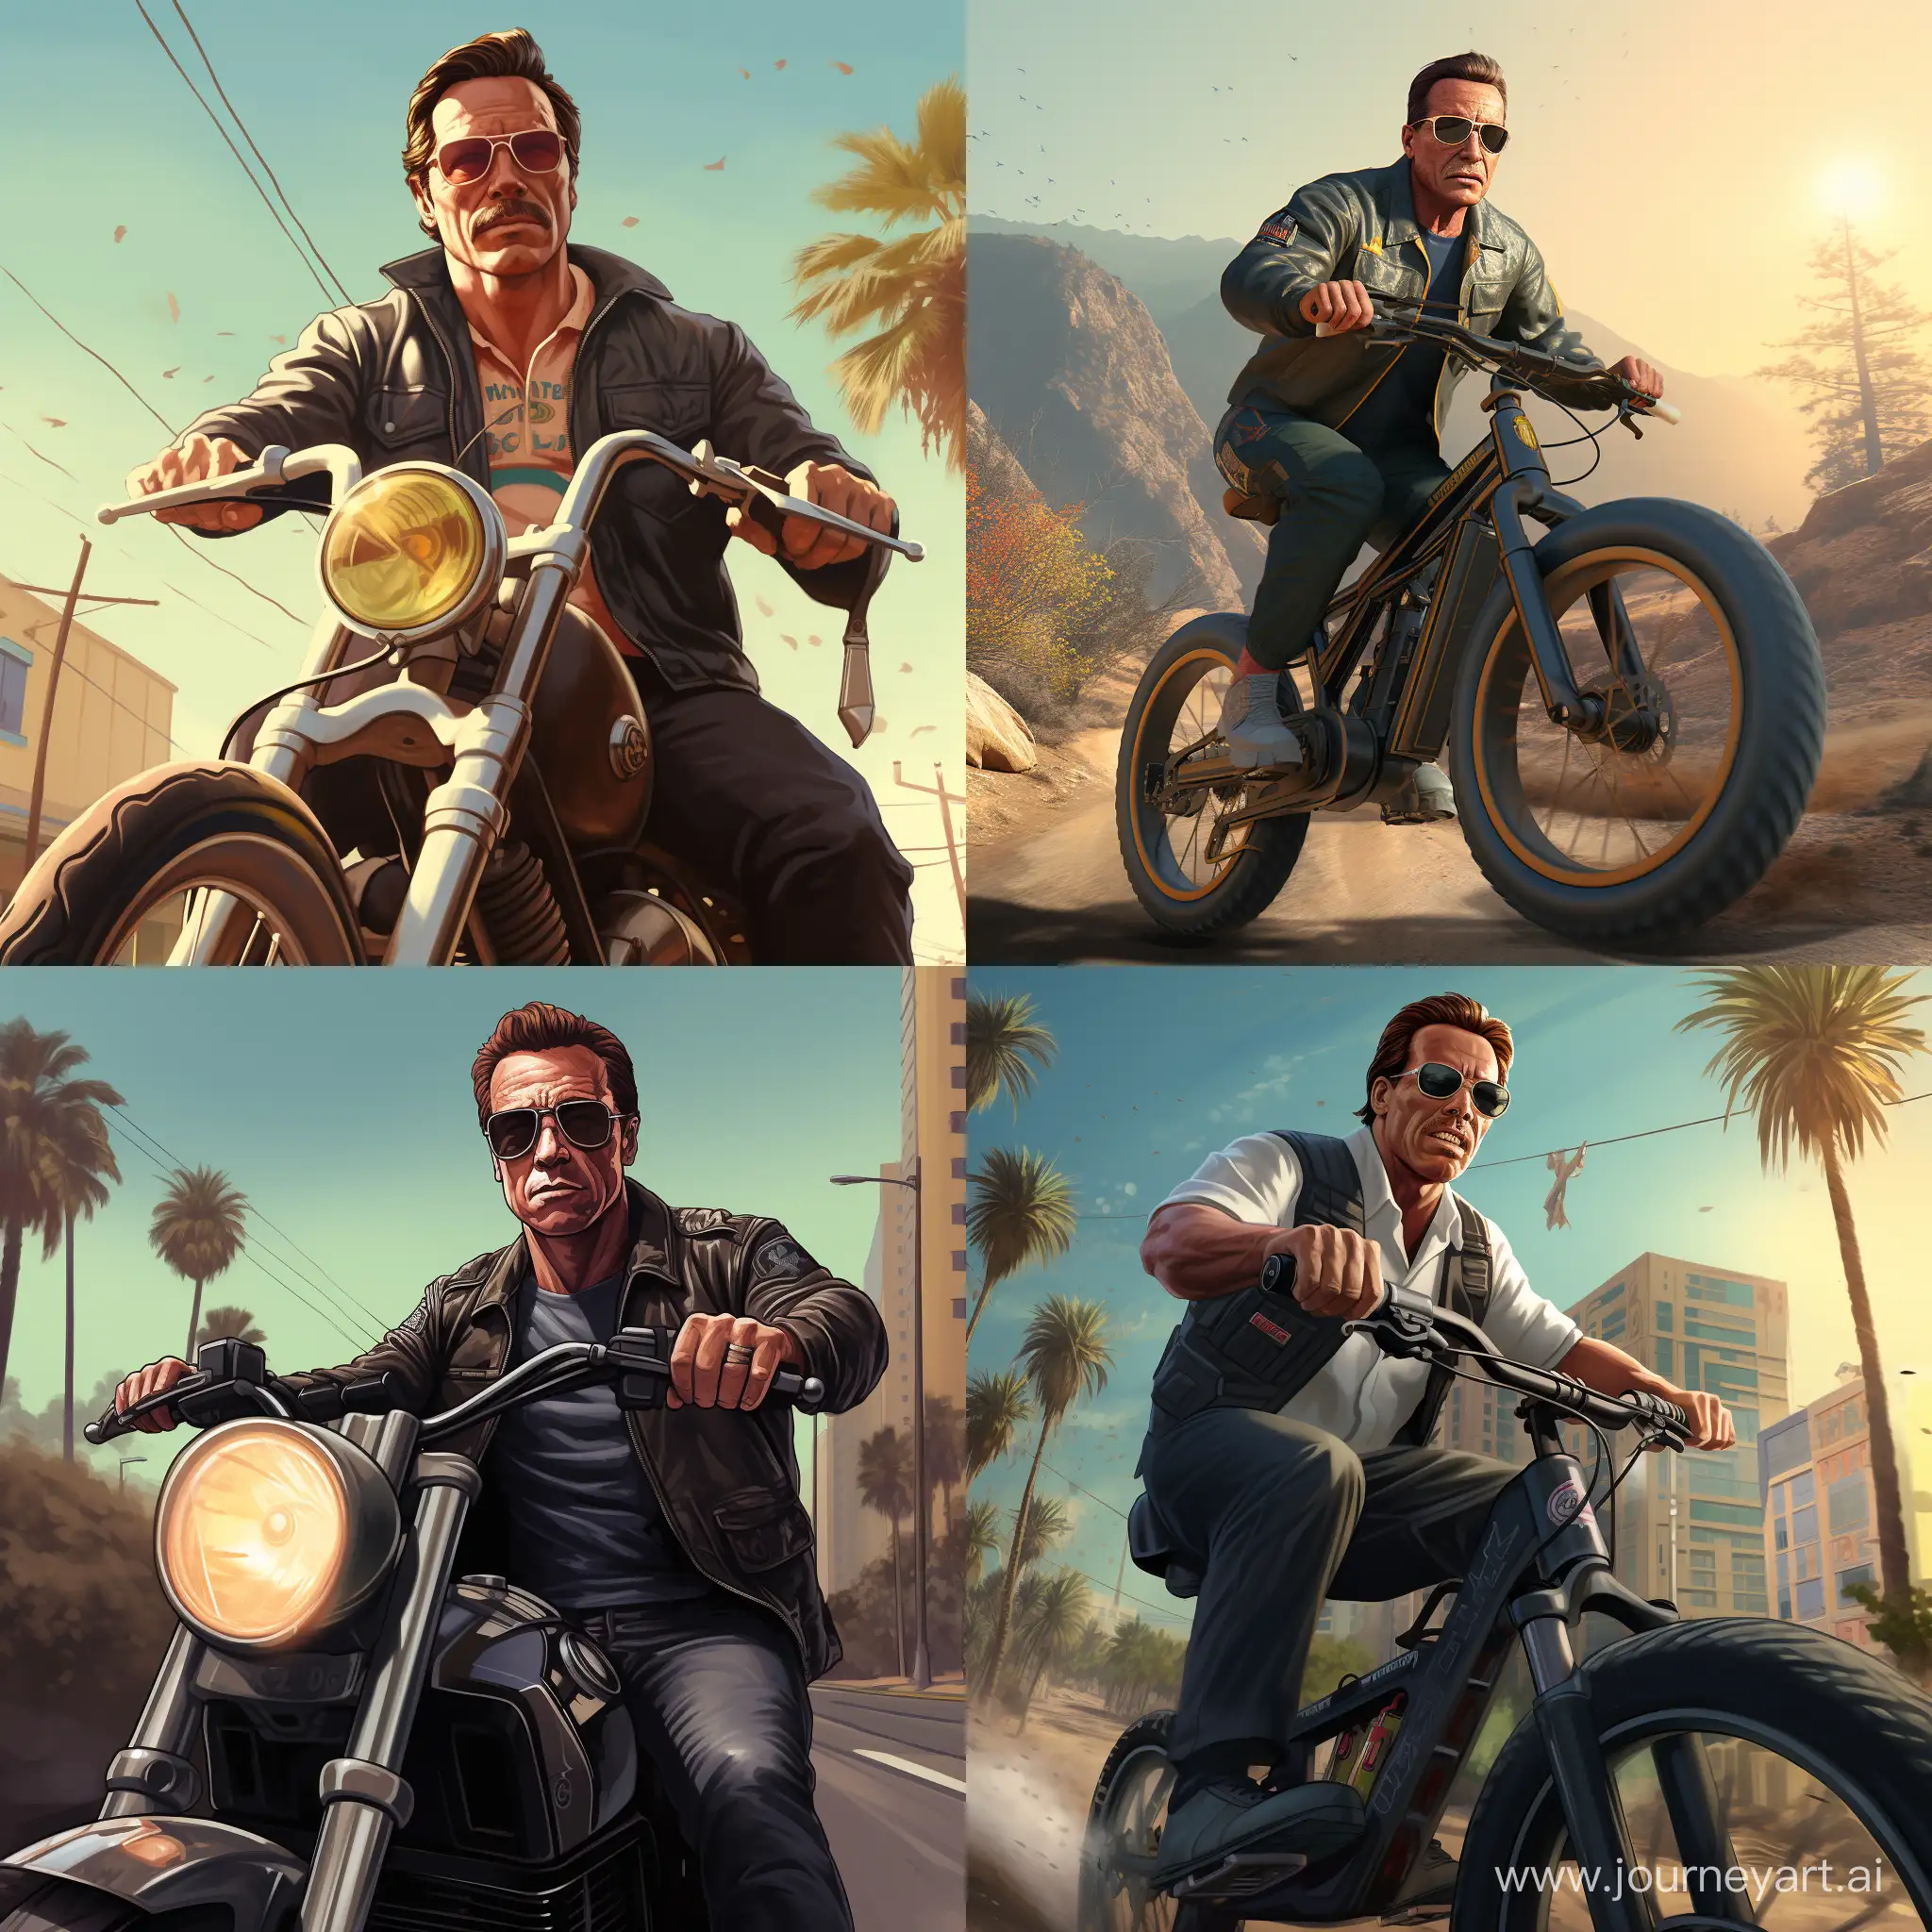 Arnold-Schwarzenegger-Riding-a-Bike-in-GTA-Style